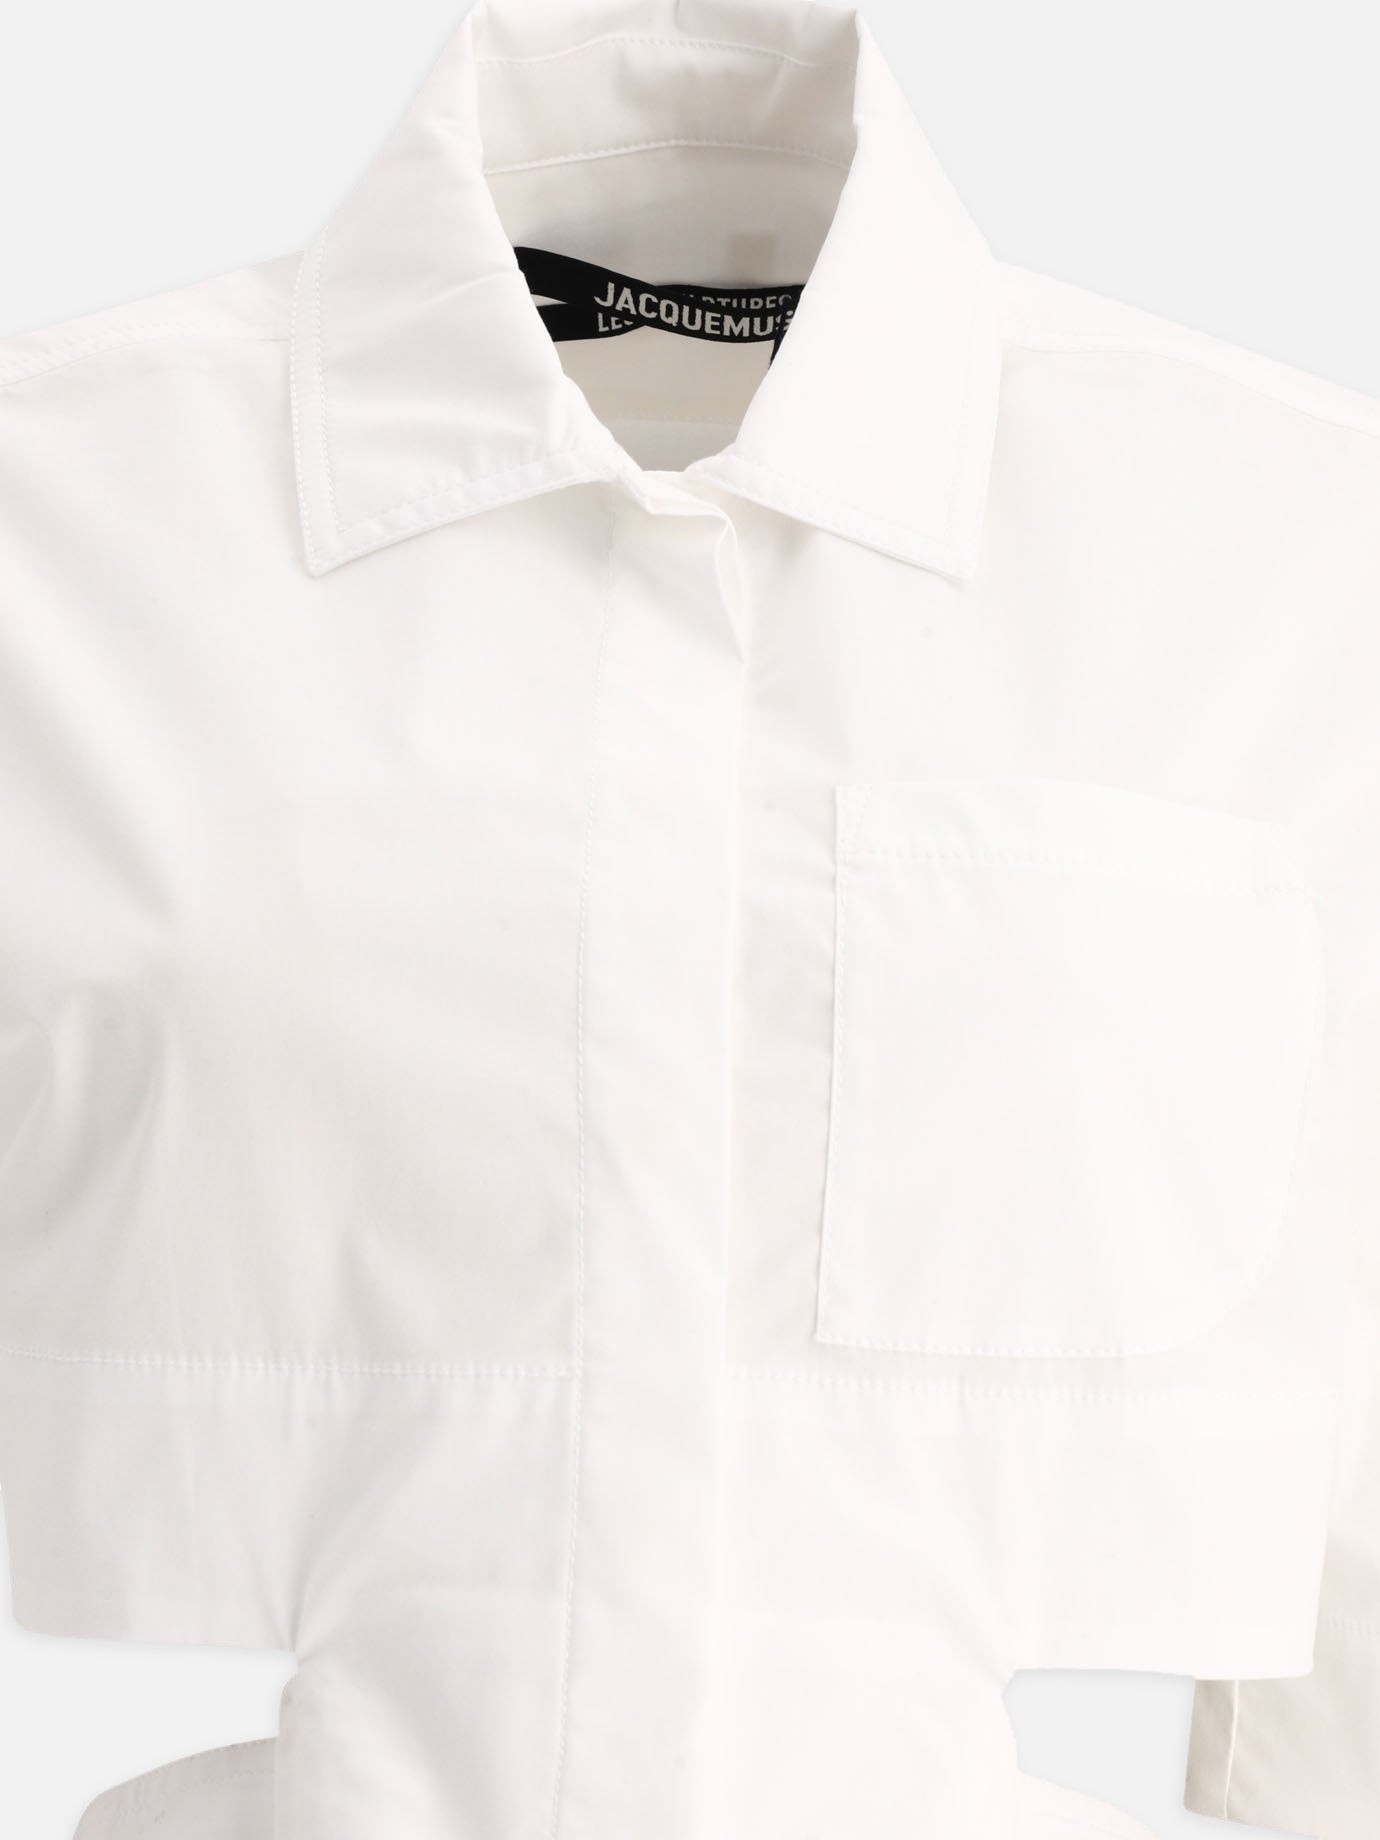 "La chemise courte Bari" shirt